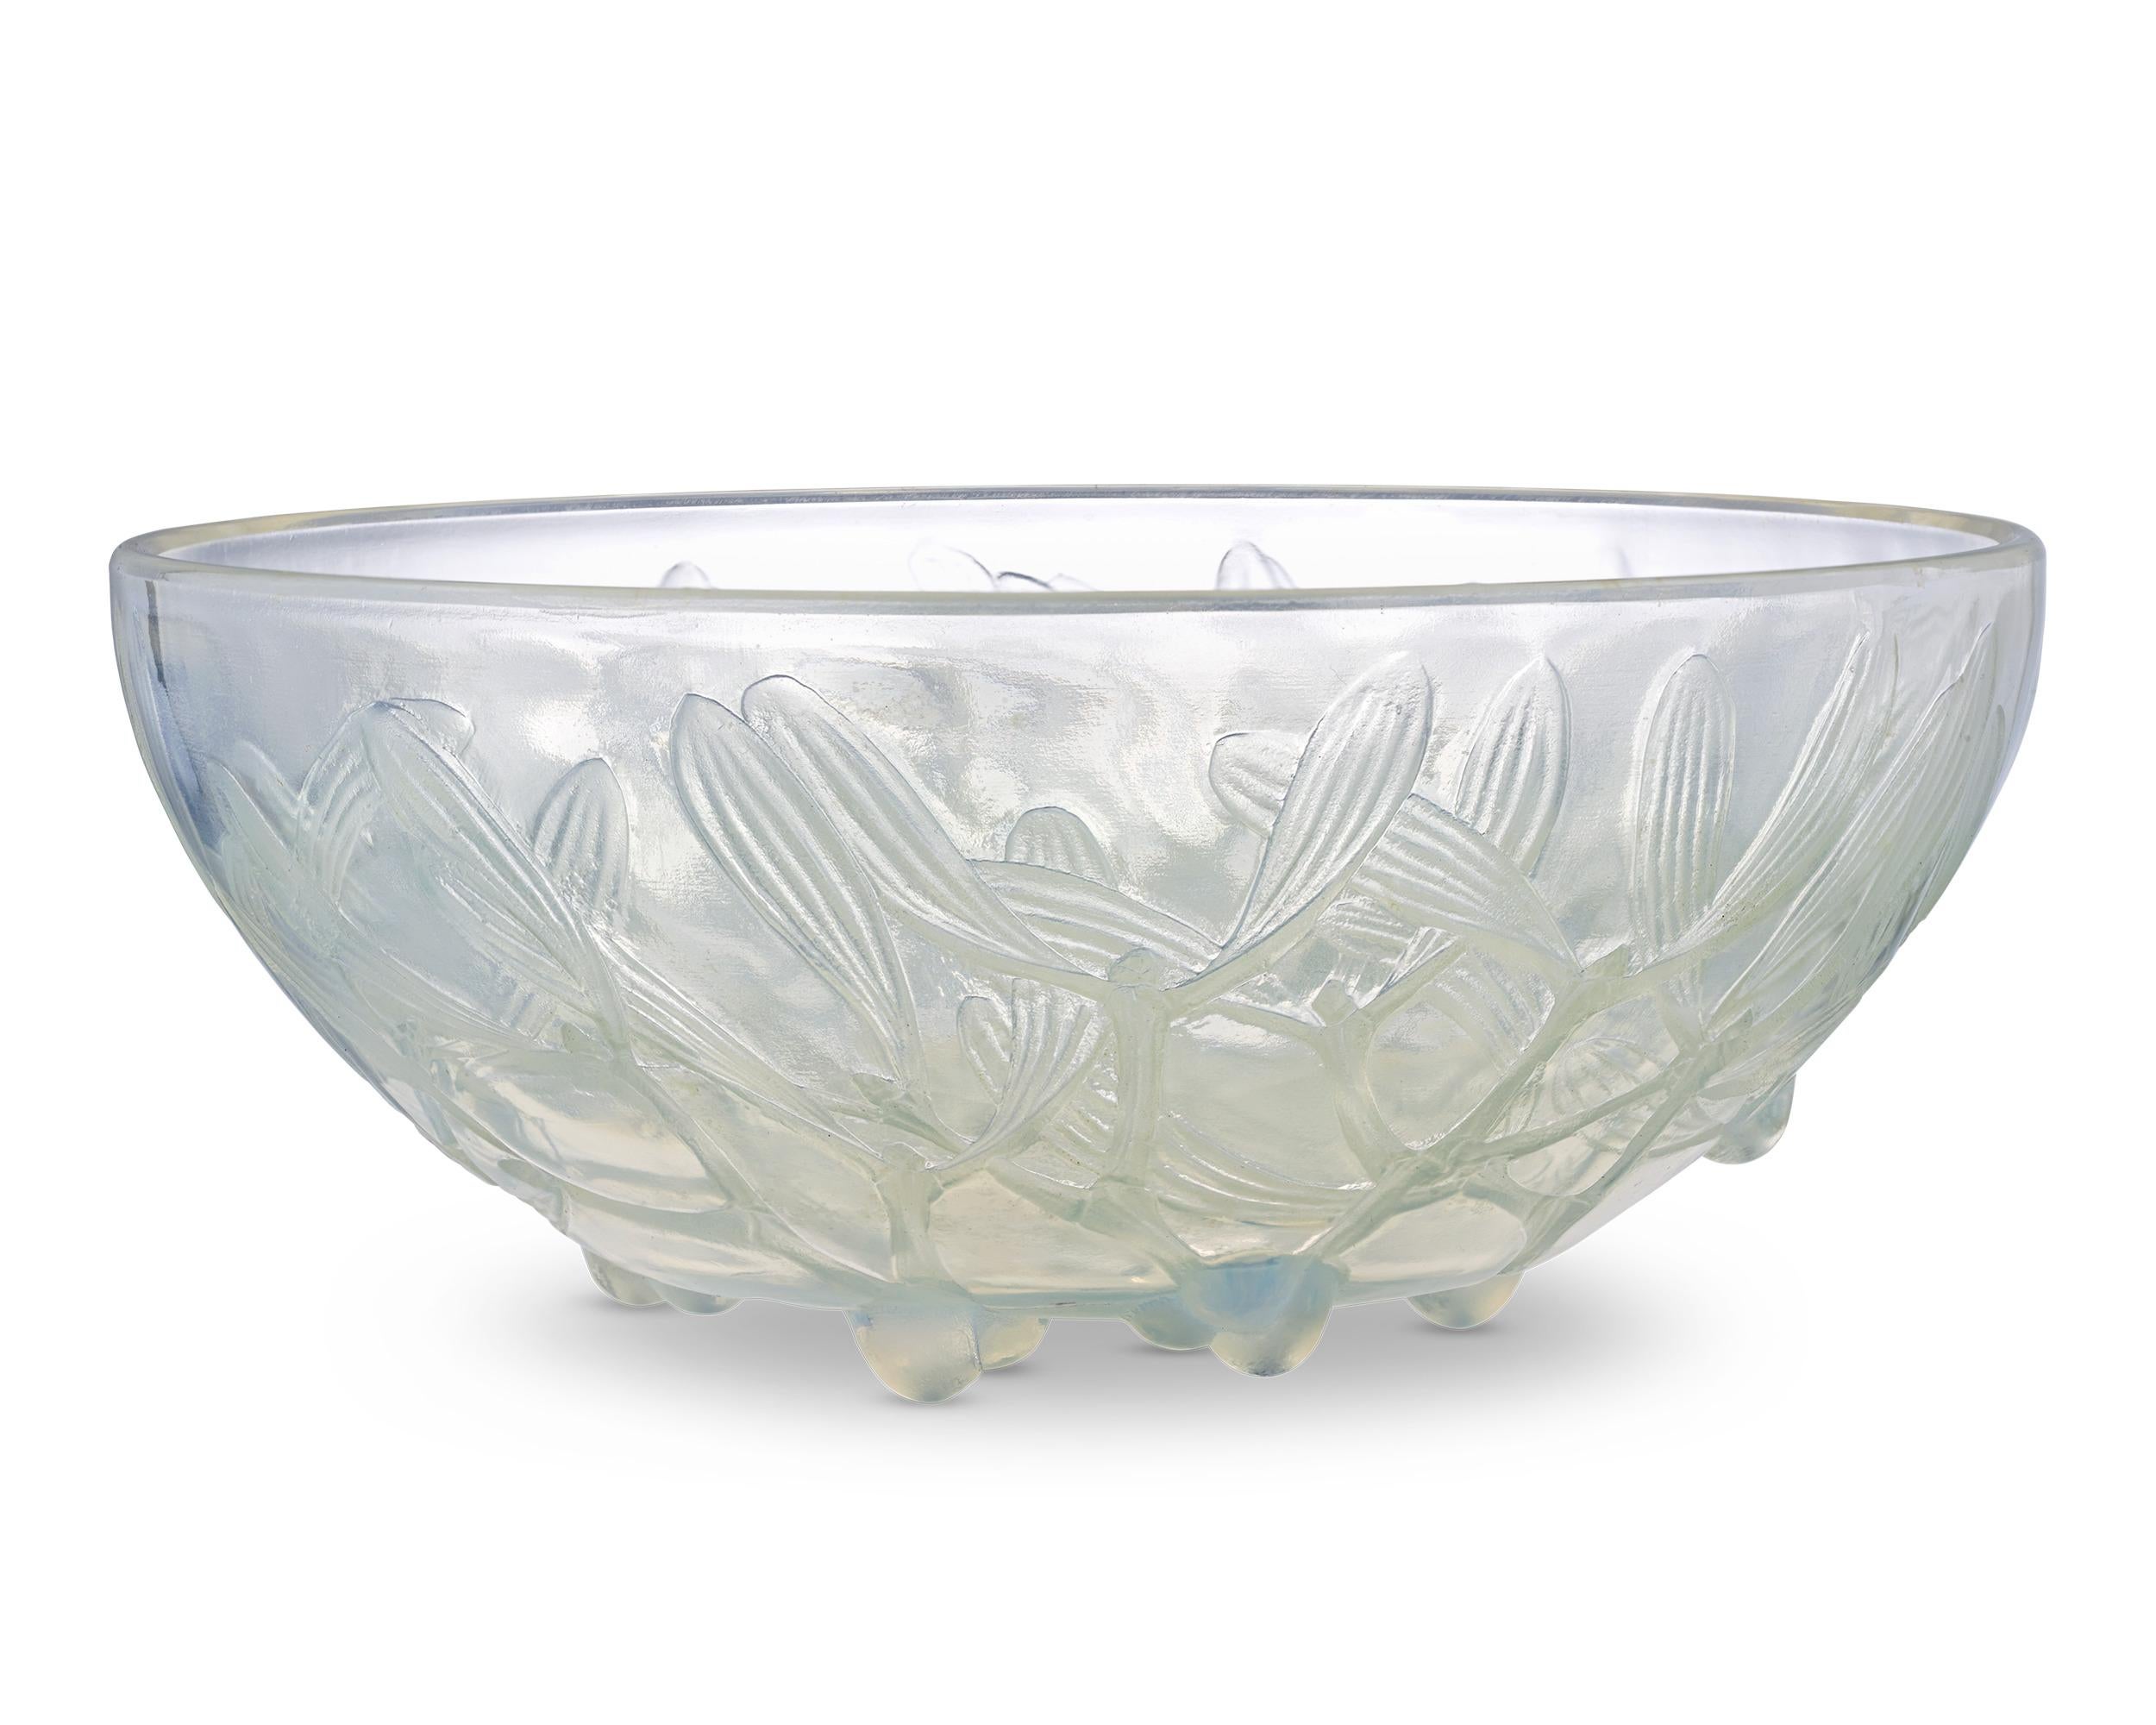 Zarte Mistelfrüchte schmücken diese auffällige Schale aus opalisierendem Glas des berühmten René Lalique. Das 1920 erstmals von Lalique entworfene Gui-Muster ist in Flachrelief gegossen und zeichnet sich durch exquisite Details aus. Diese Schale ist